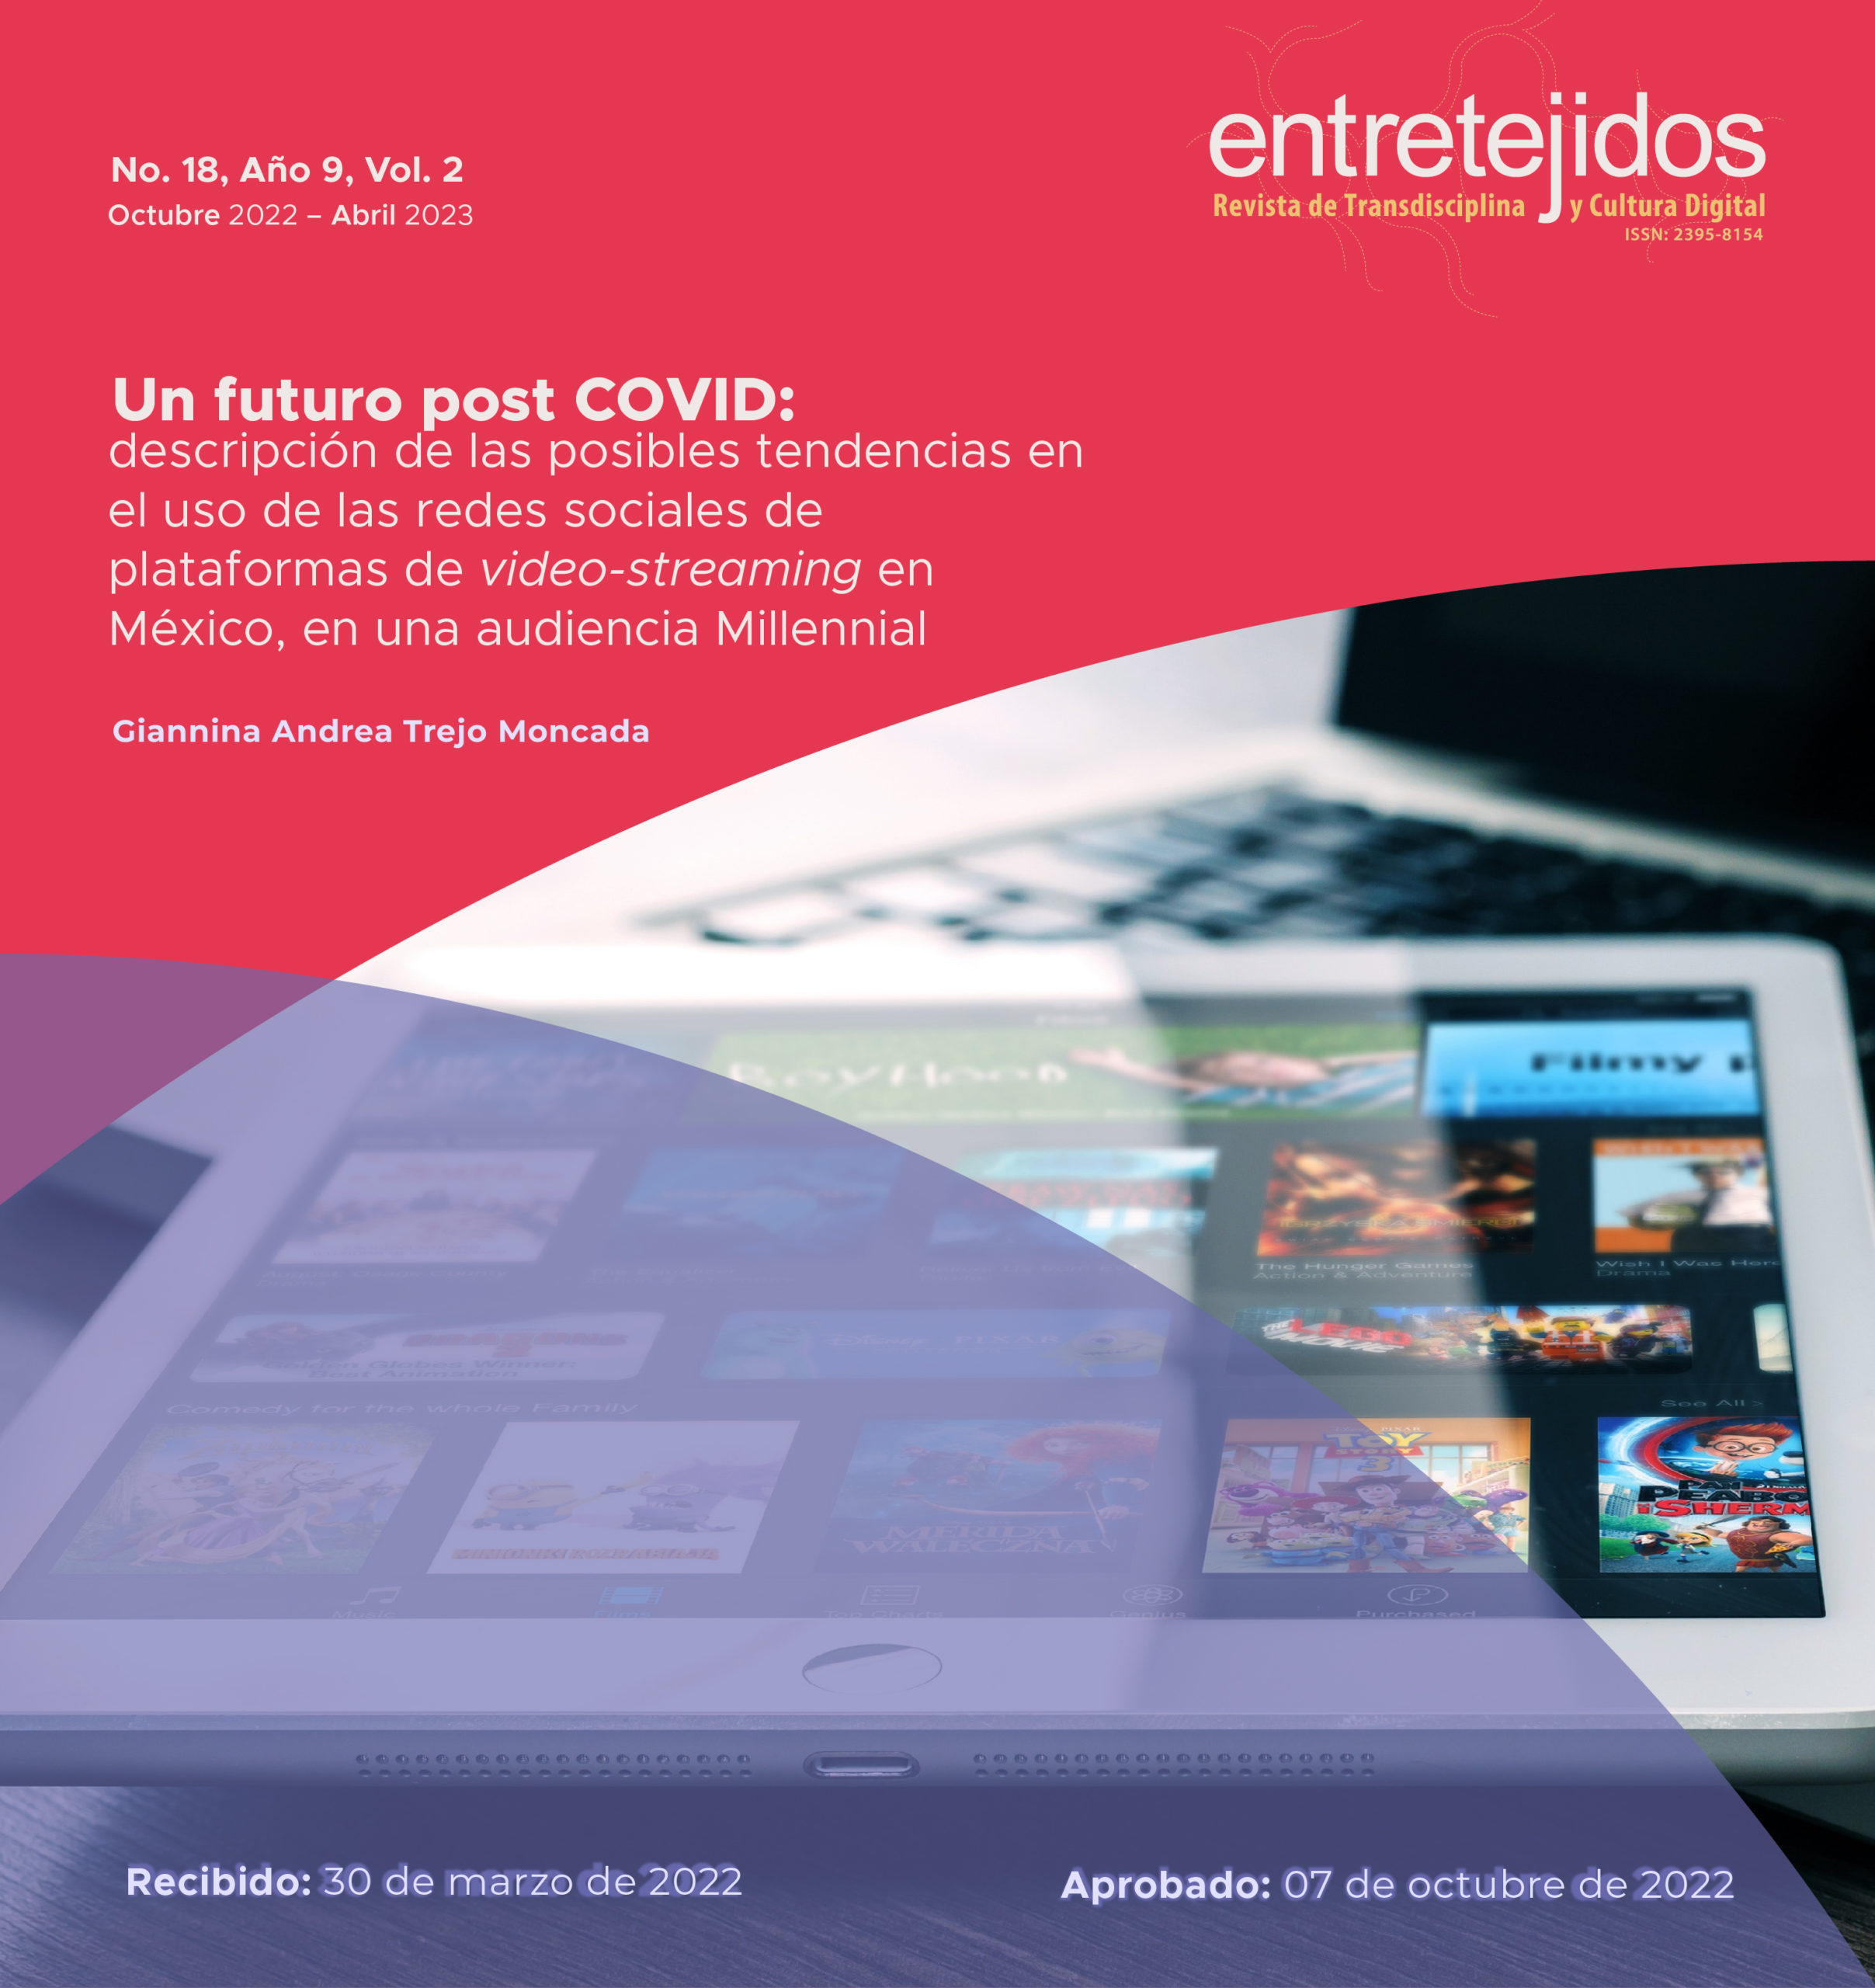 Un futuro post COVID: descripción de las posibles tendencias en el uso de las redes sociales de plataformas de video-streaming en México en una audiencia Millennial